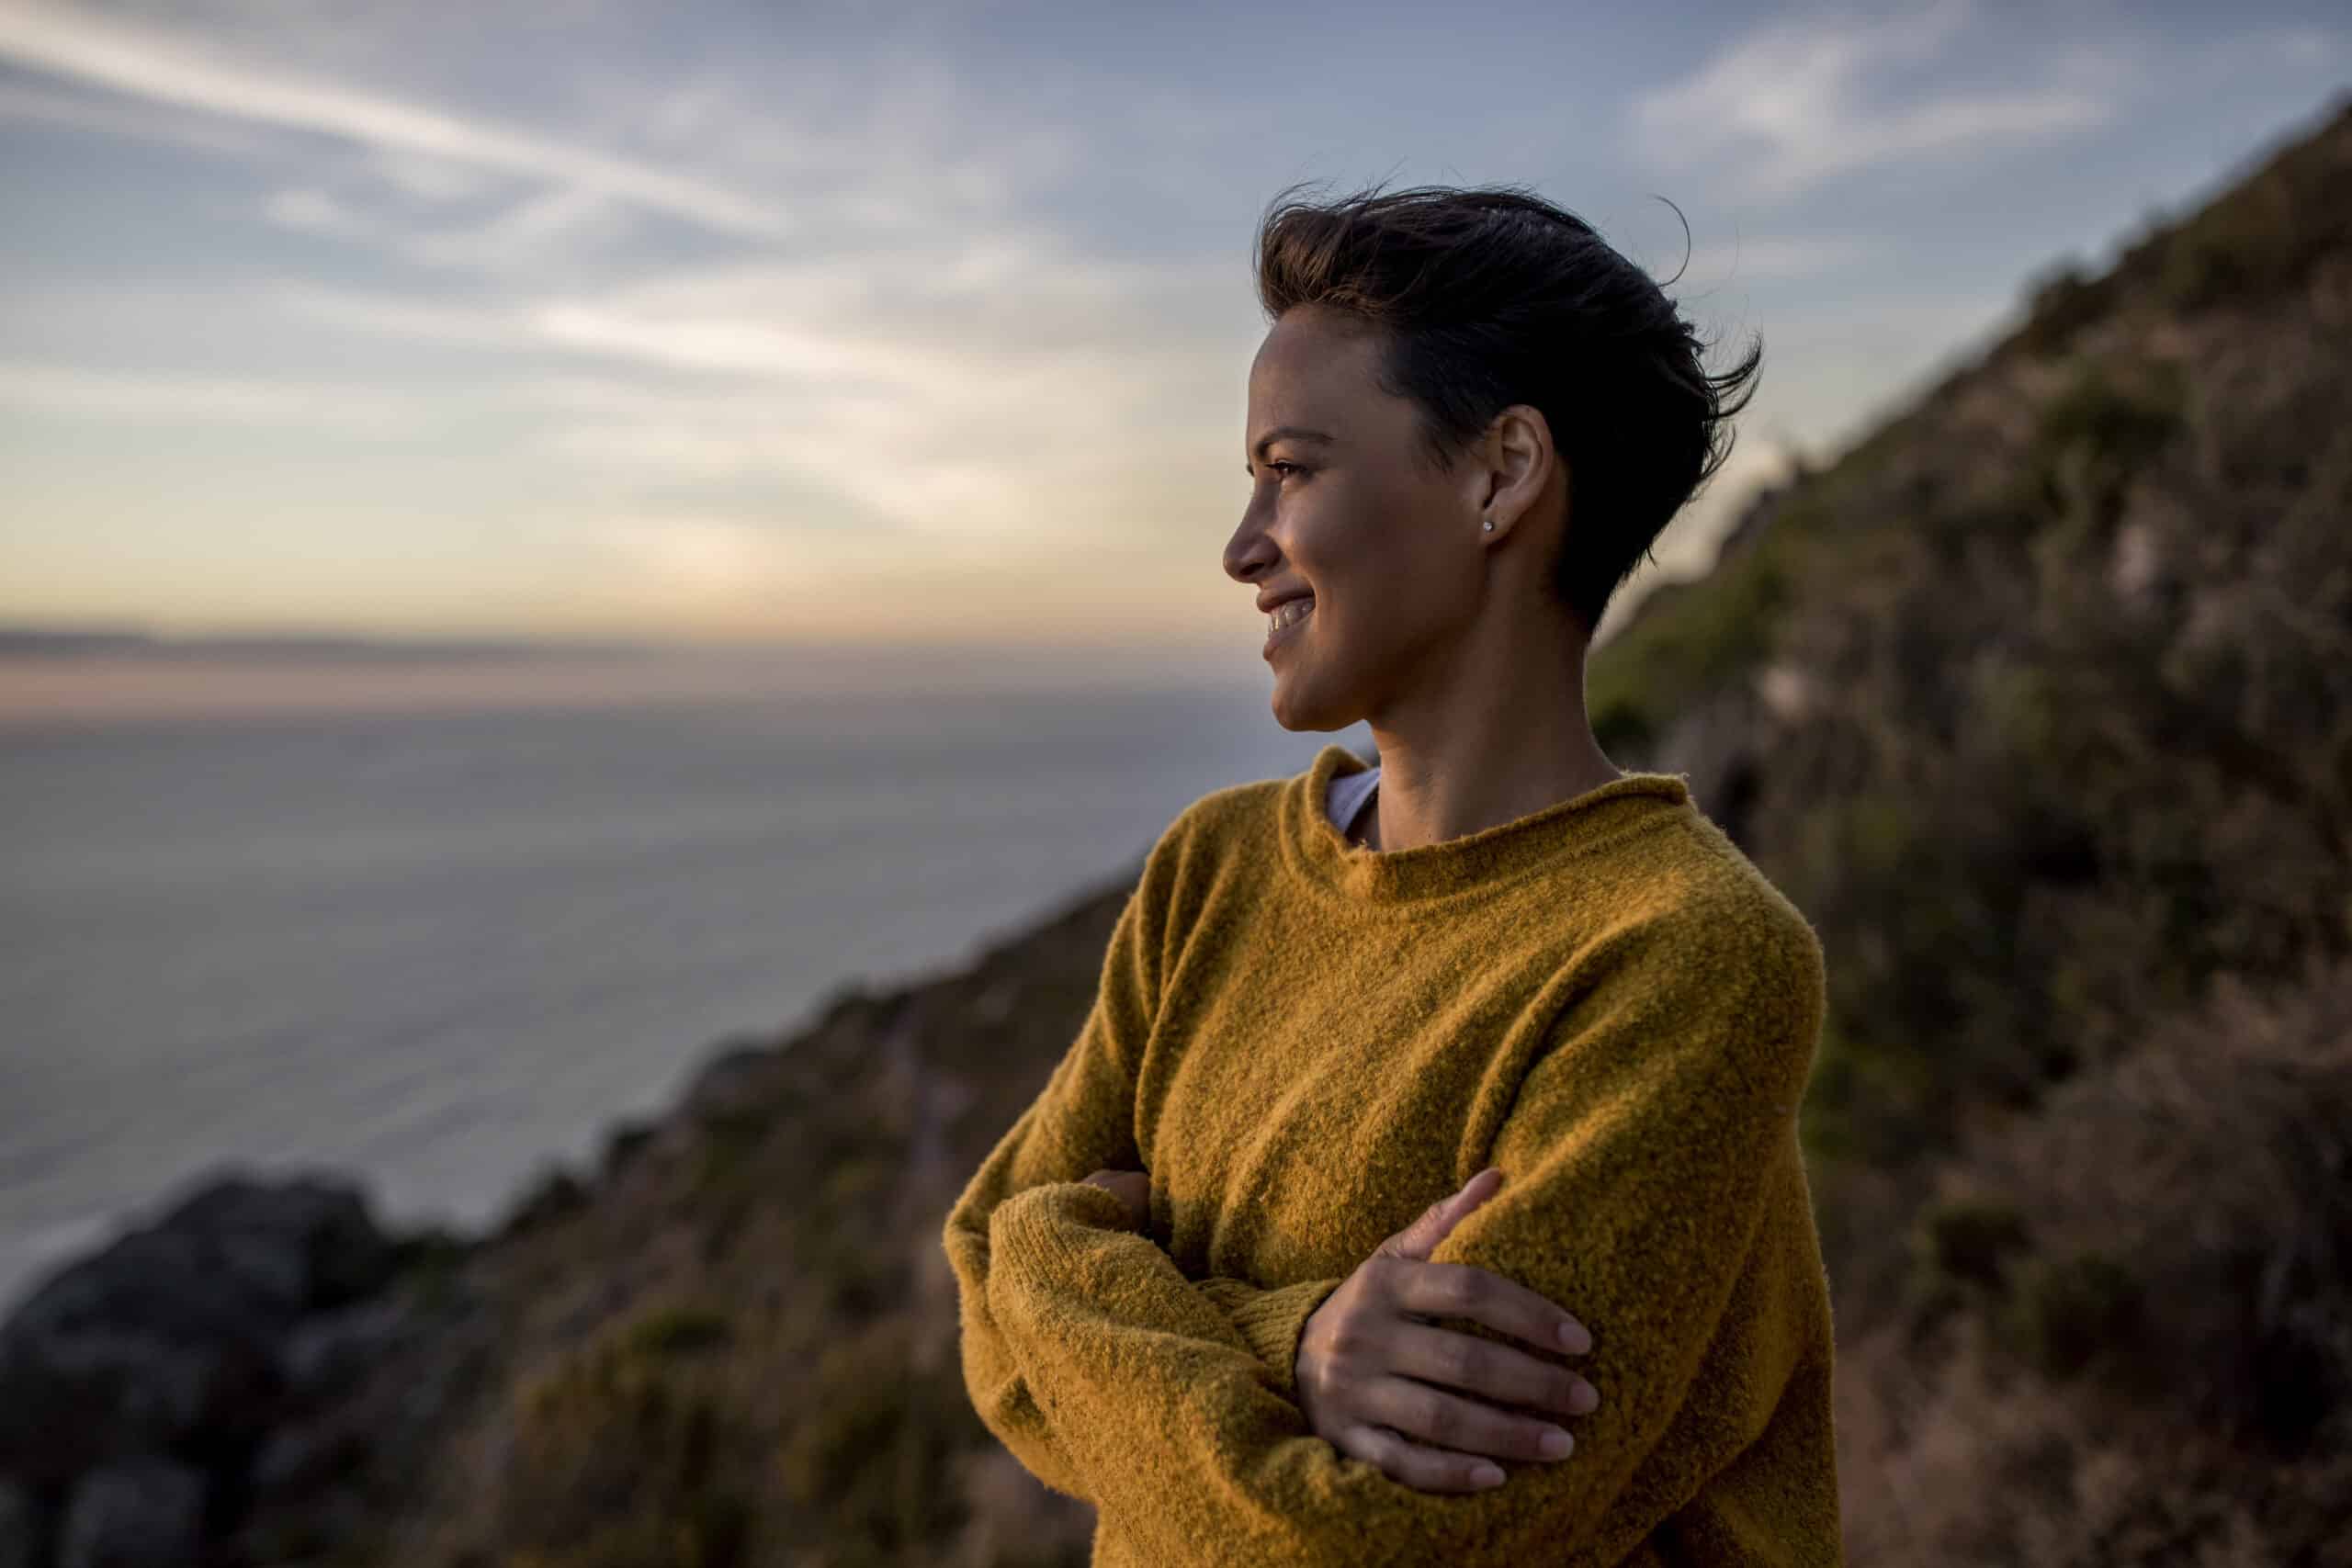 Eine Person in einem gelben Pullover steht bei Sonnenuntergang auf einer Klippe und blickt mit einem zufriedenen Lächeln und verschränkten Armen auf das Meer. Im Hintergrund sind ein ruhiges Meer und ein sanfter Himmel zu sehen. © Fotografie Tomas Rodriguez